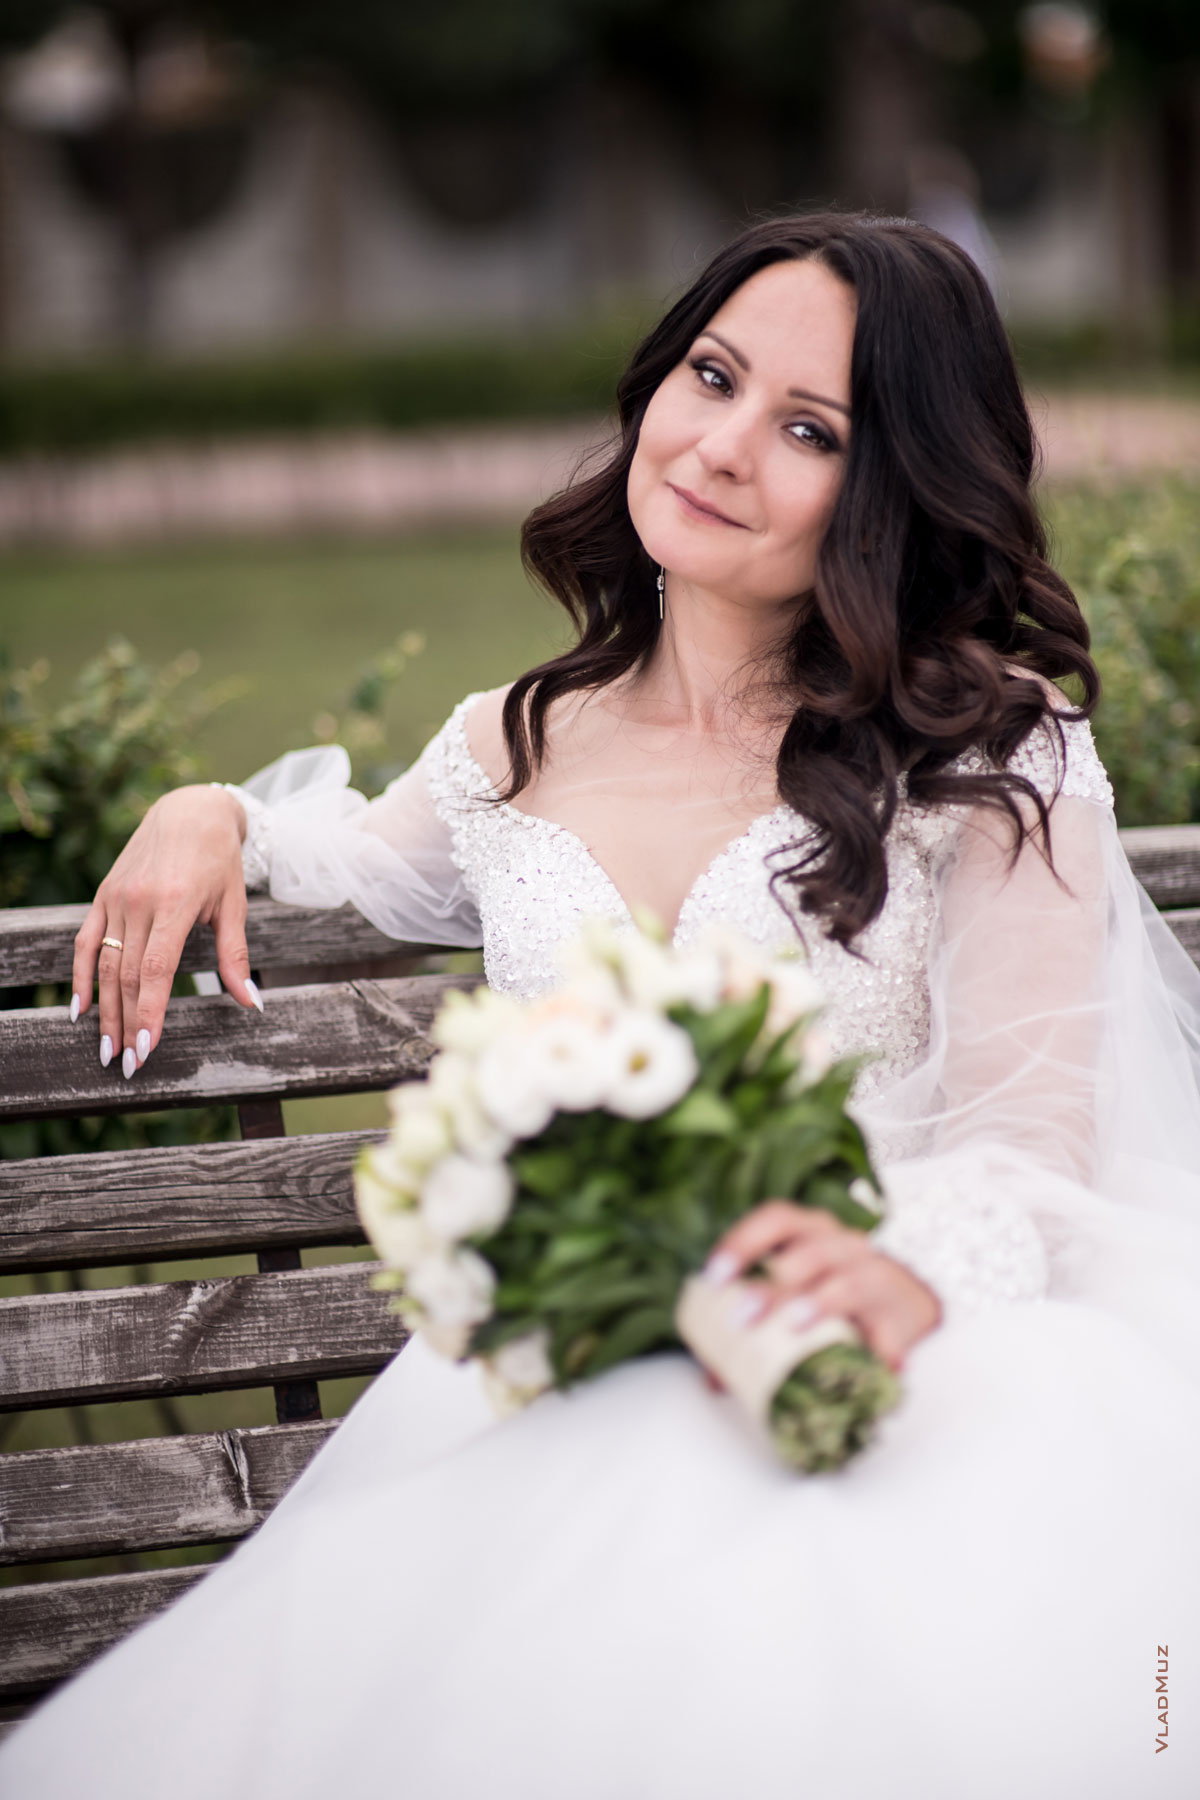 Фото красивой невесты с букетом, сидя на лавочке